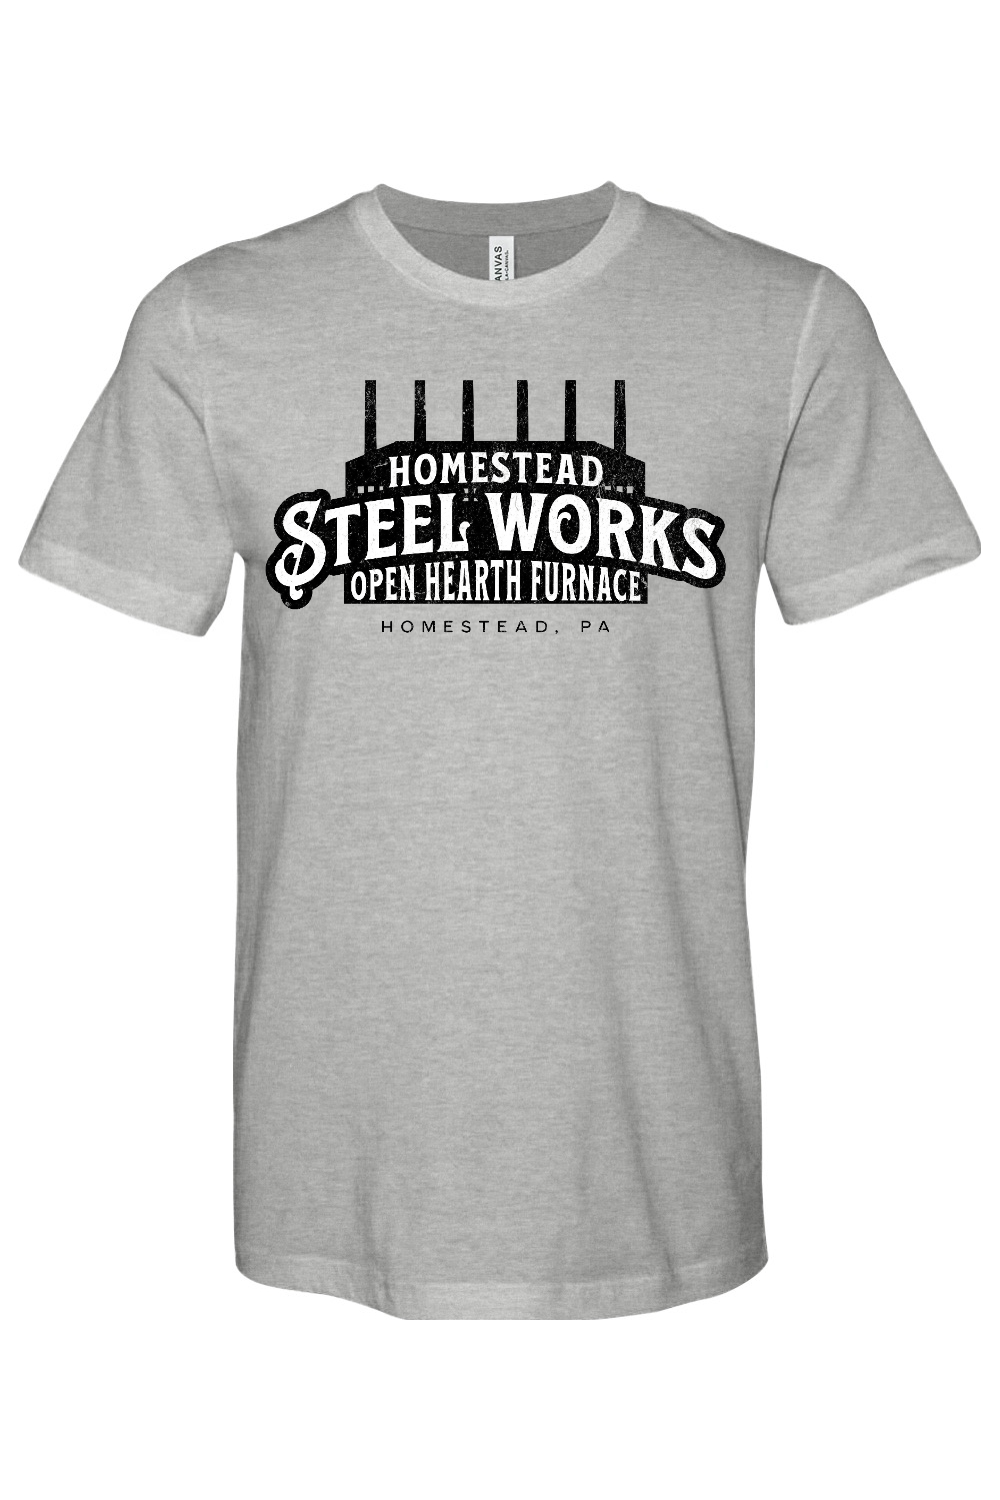 homestead steel works